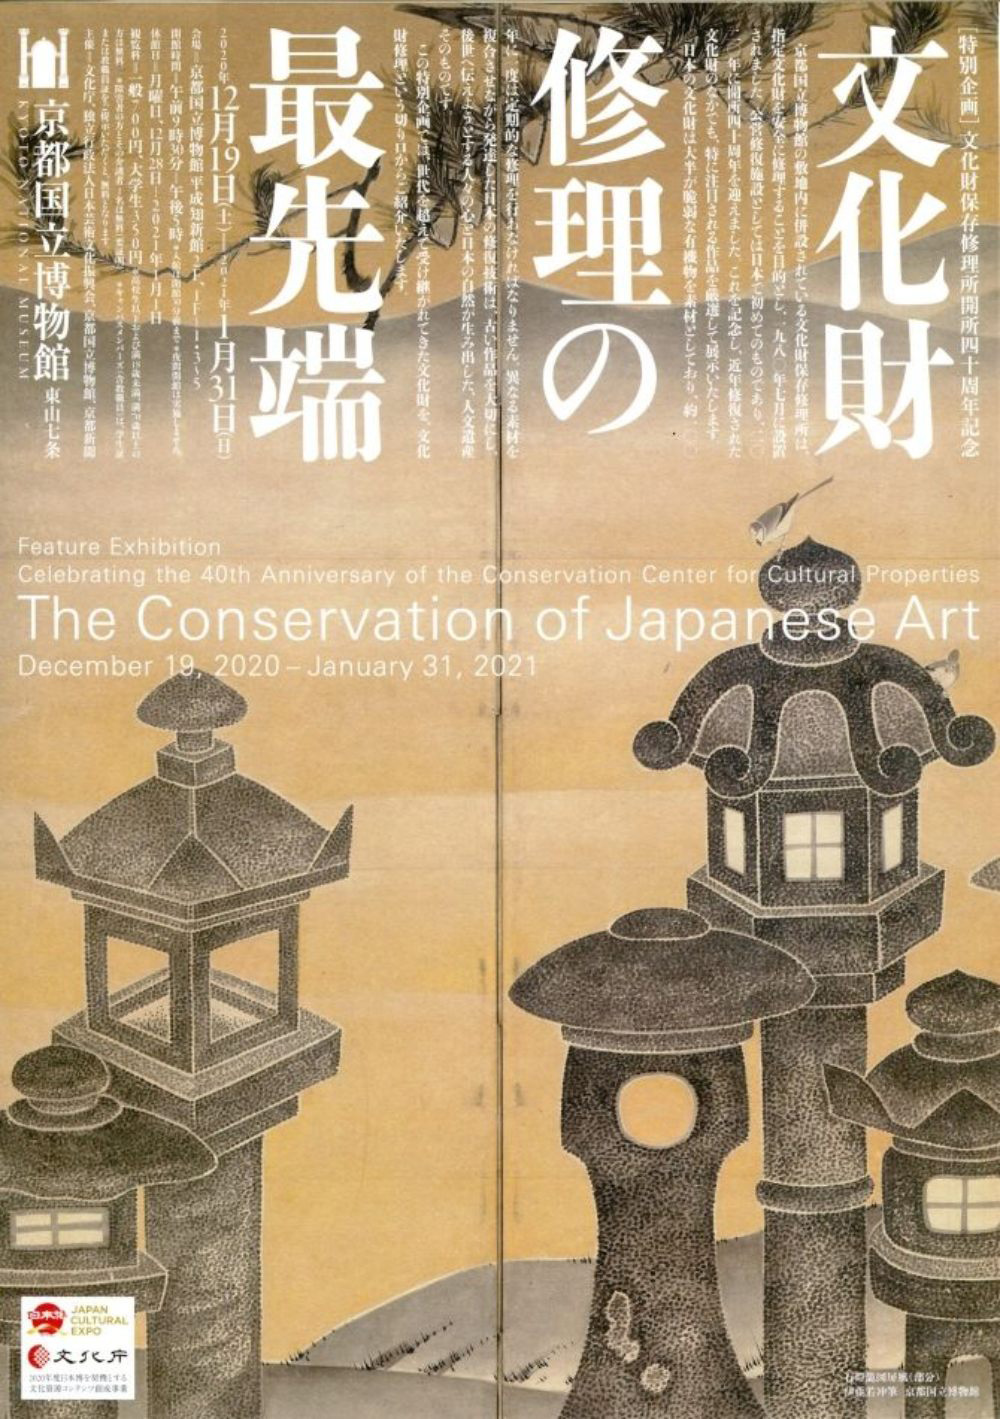 不同风格呈现！12款日文展览海报设计